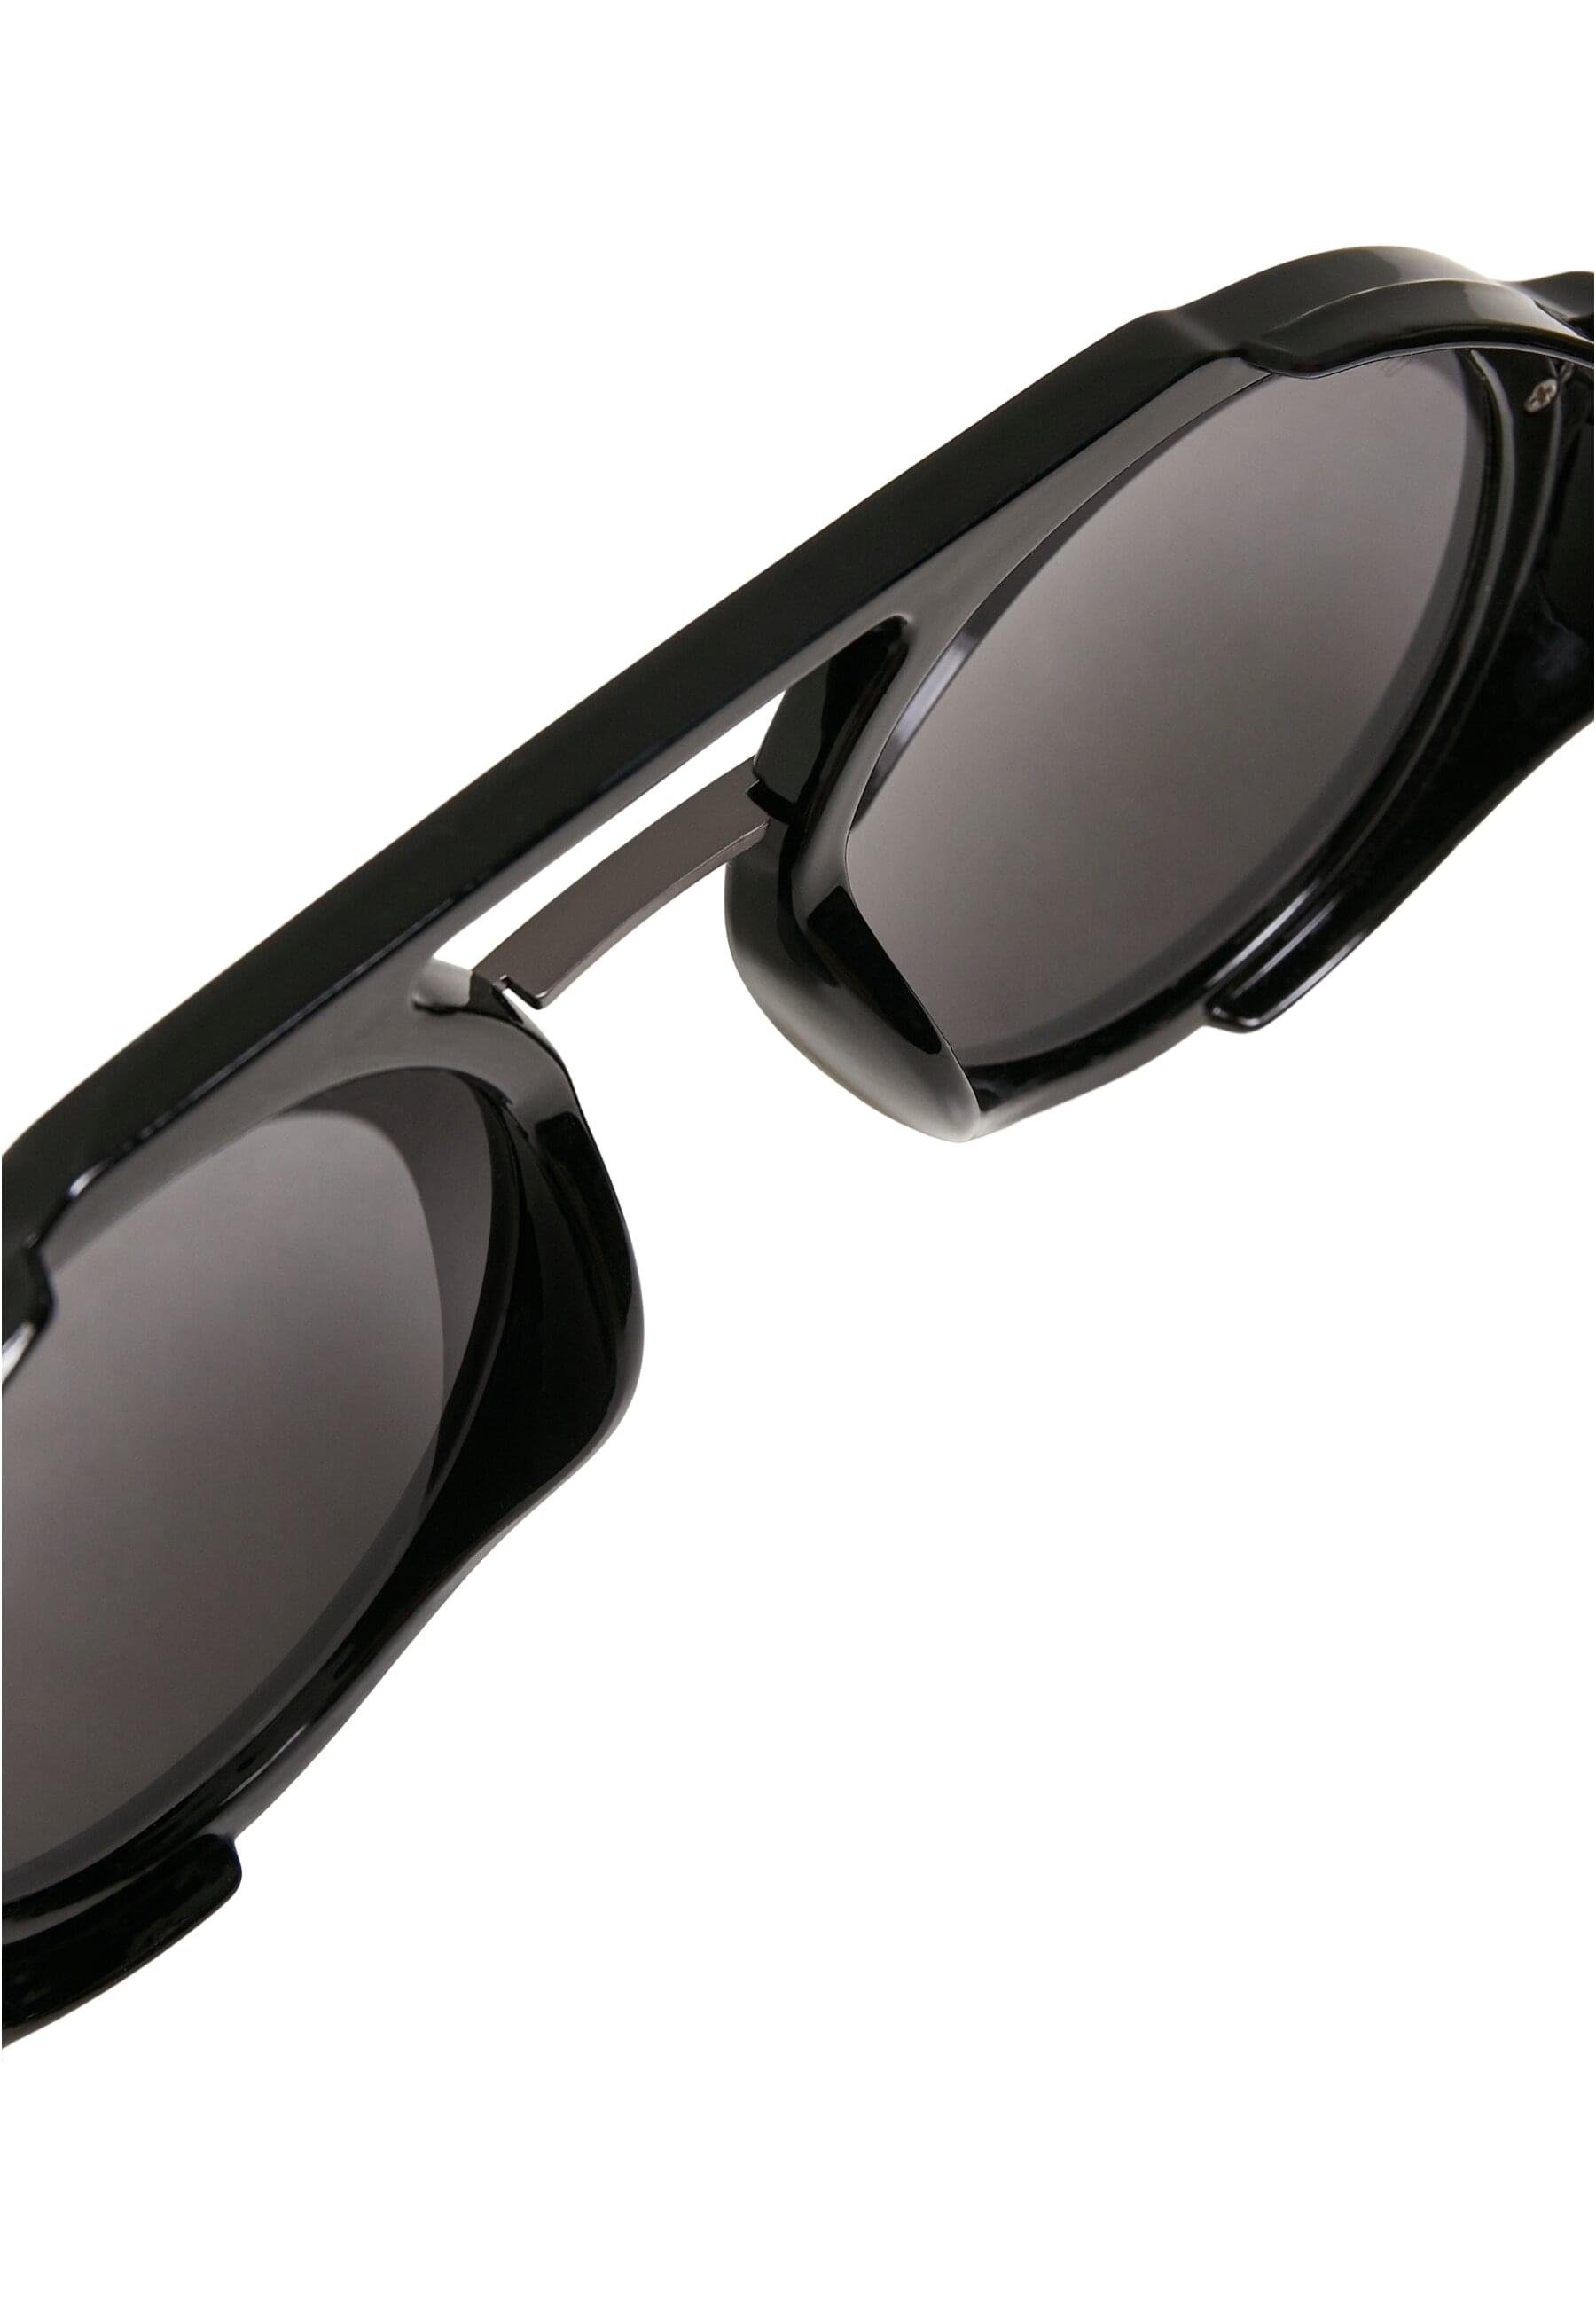 URBAN CLASSICS Sonnenbrille Sunglasses Unisex Java